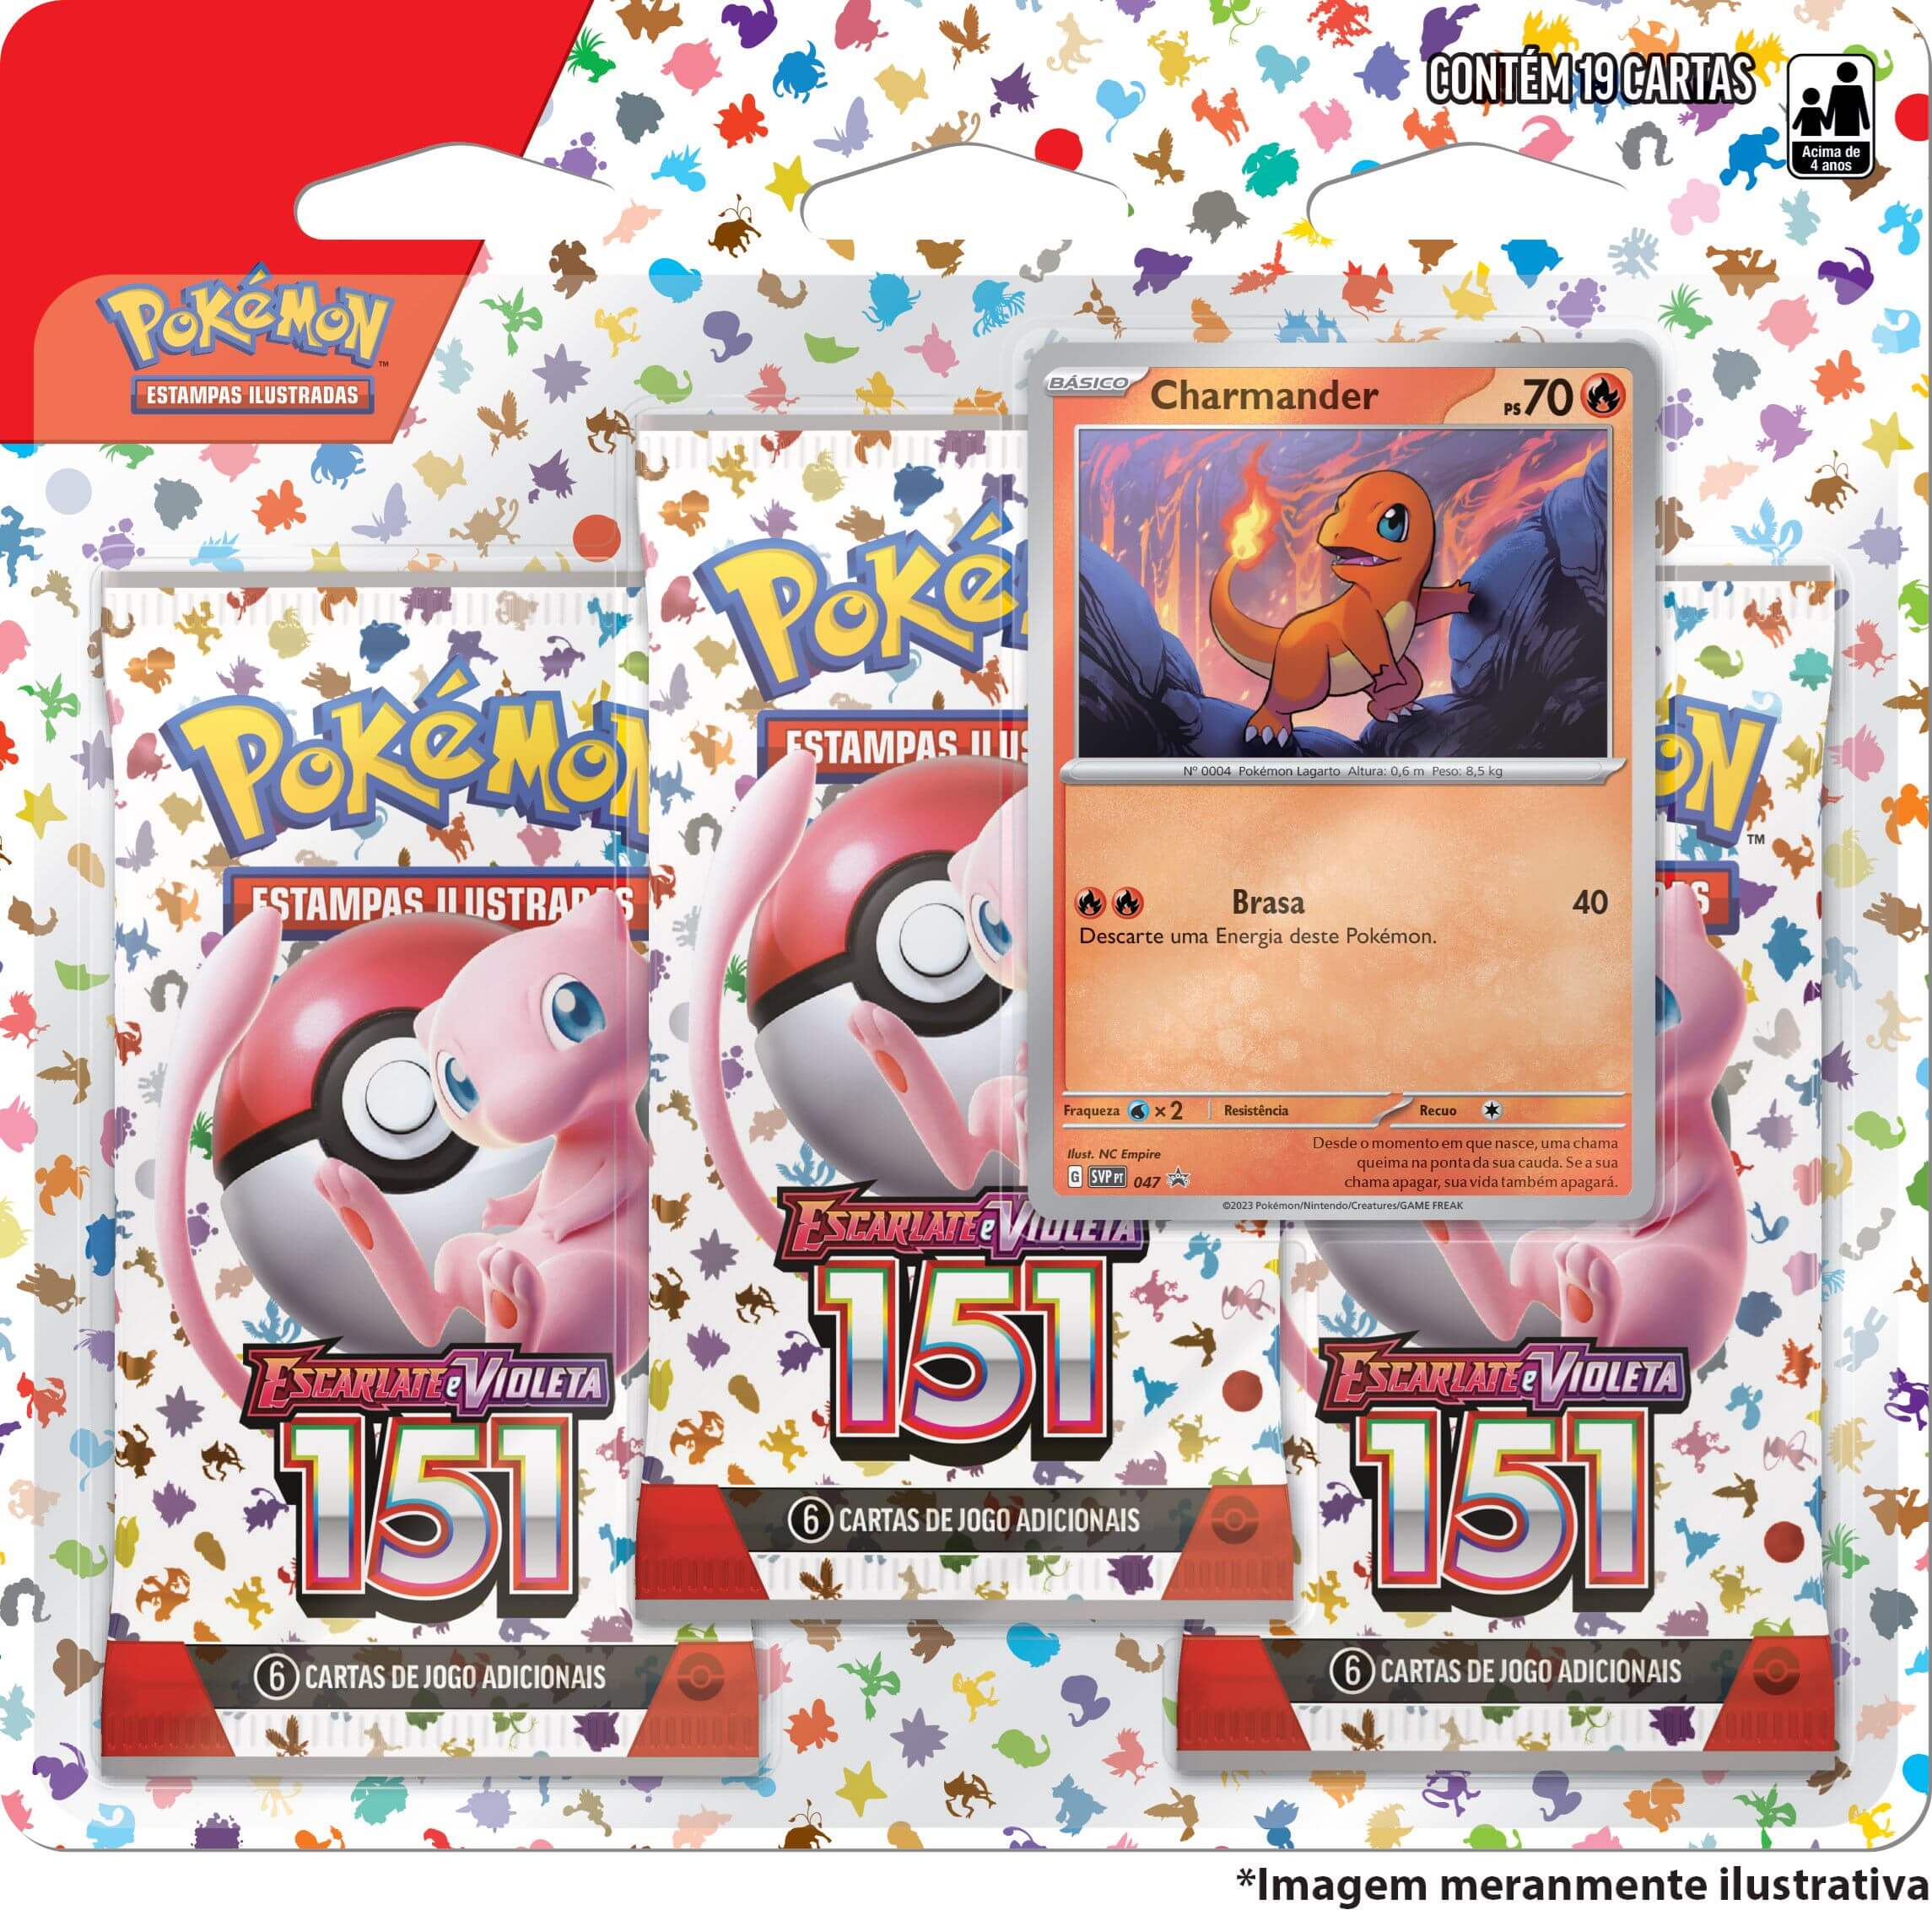 Nova Expansão de Pokémon Estampas Ilustrada Escarlate e Violeta-151 é  lançada hoje, com os icônicos 151 Pokémon originais - Aigis